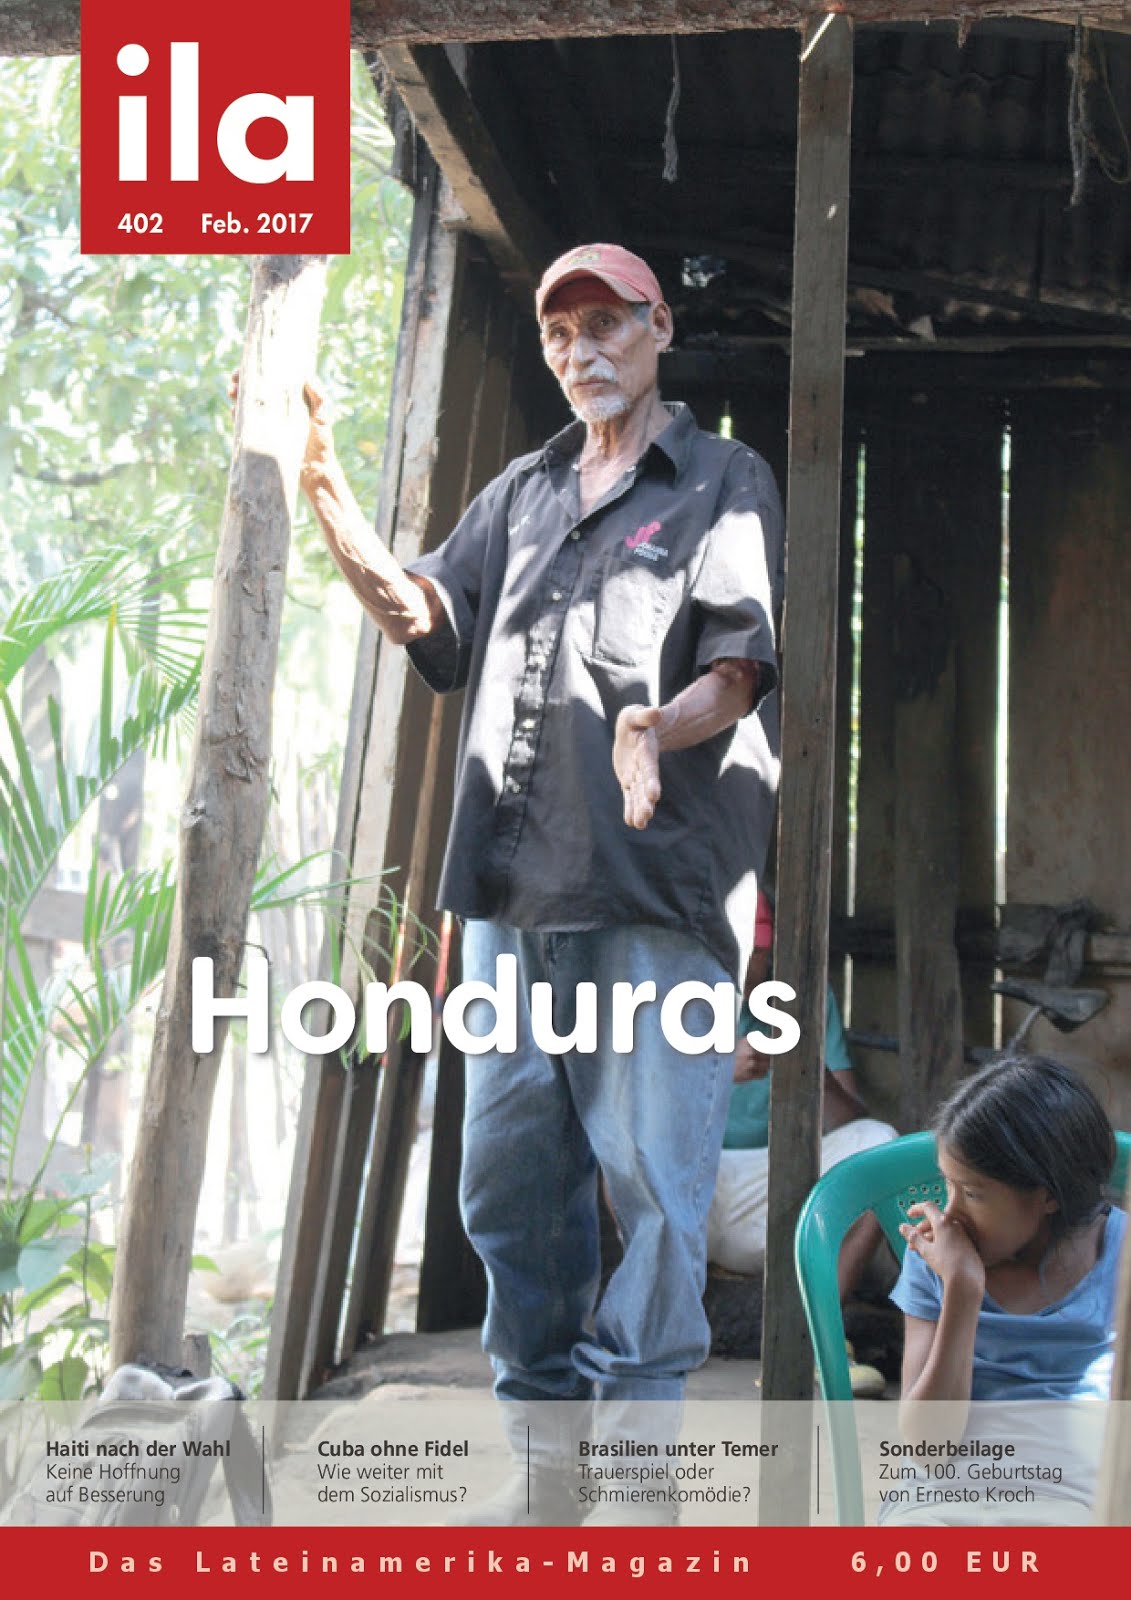 Zeitschrift ila zu Honduras erschienen